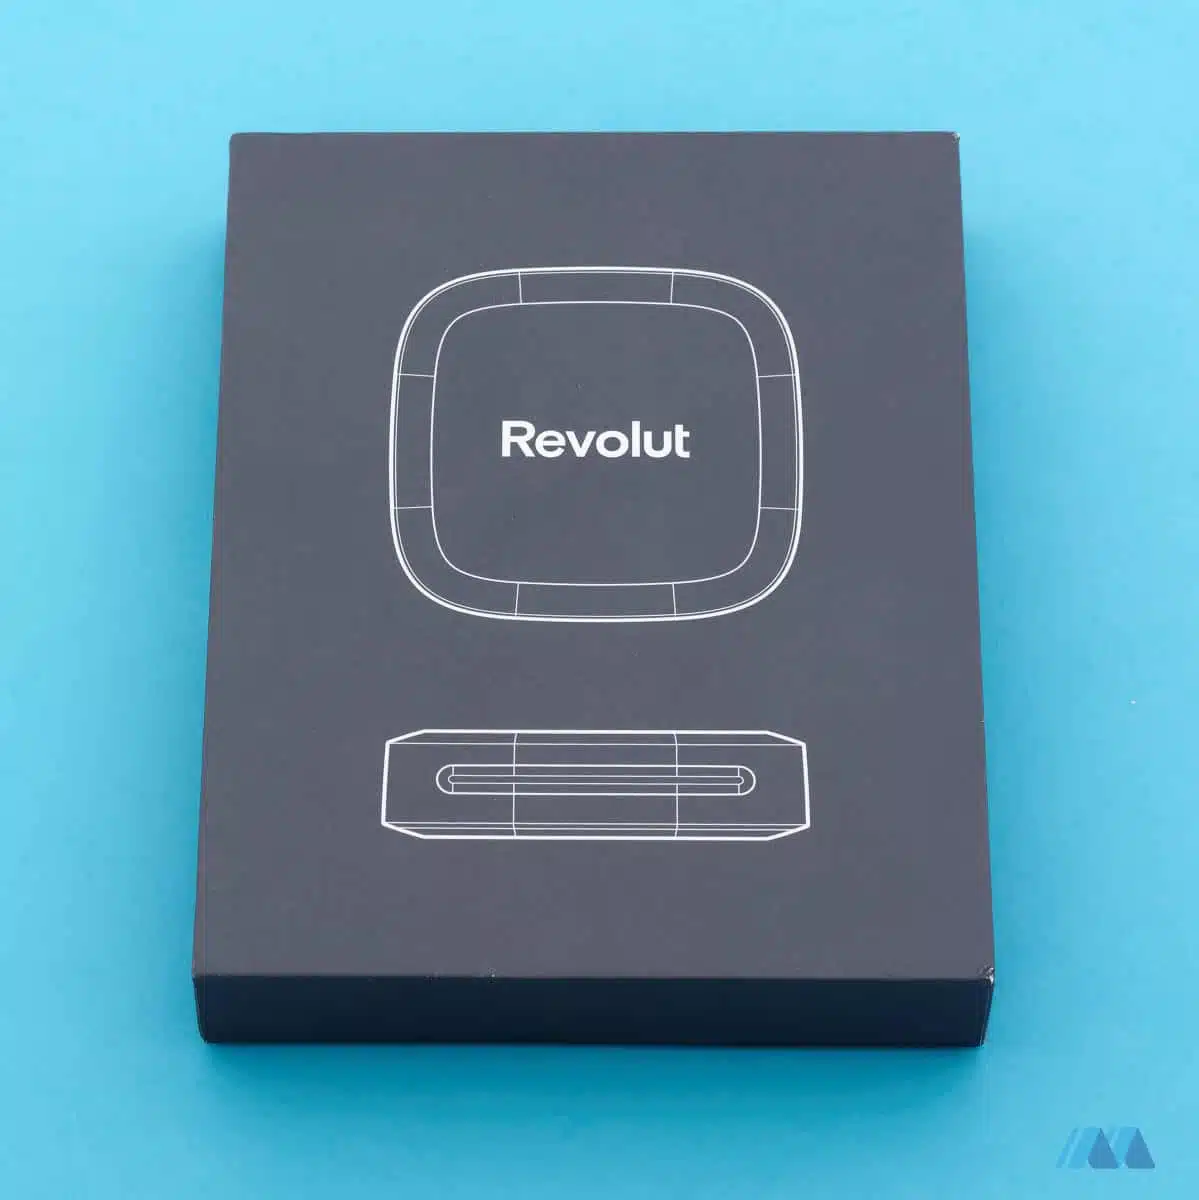 Il dispositivo è contenuto in una scatola di colore nero, raffigurante la sagoma del Revolut Reader